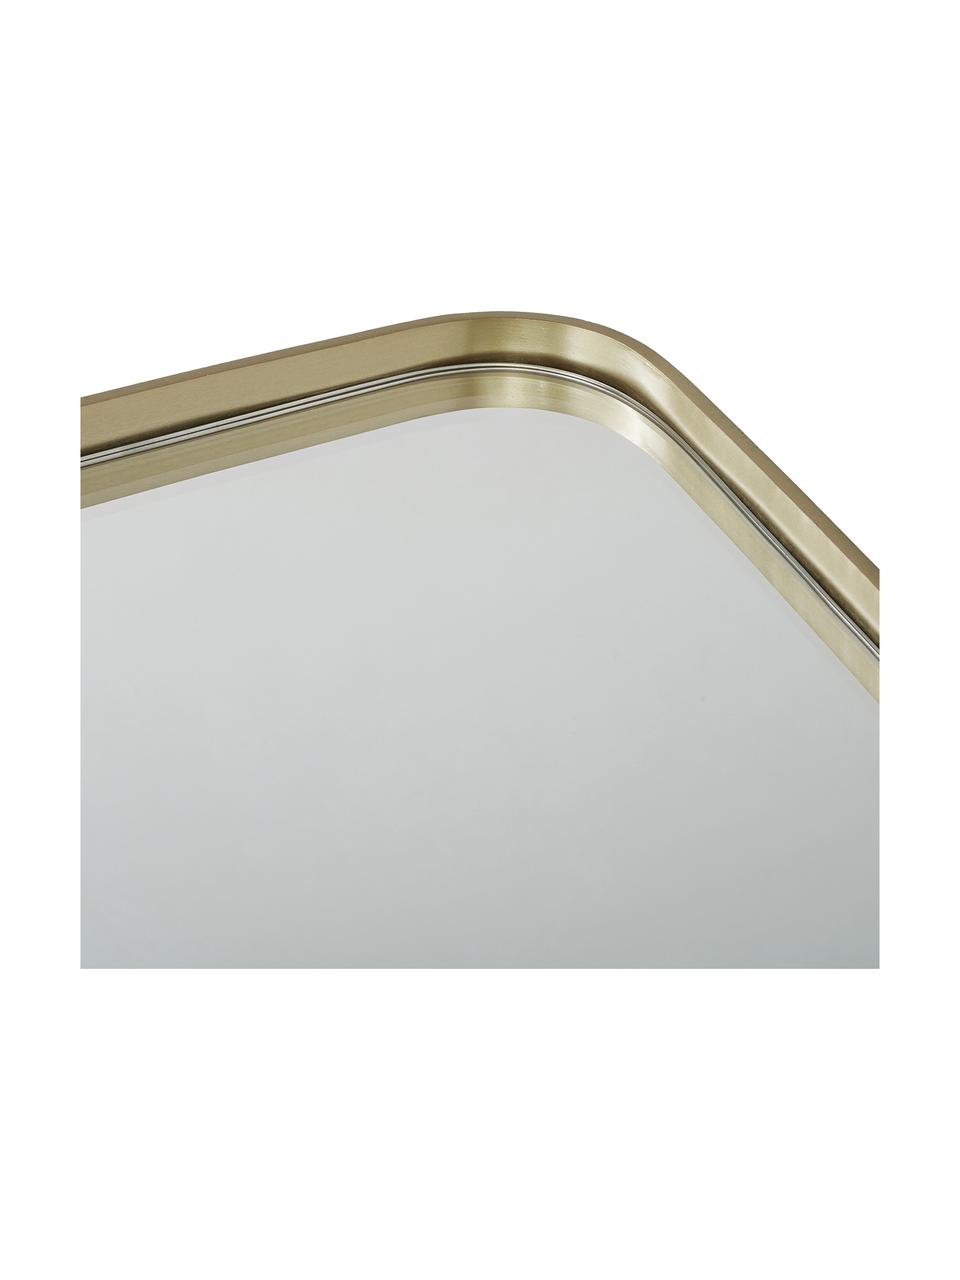 Eckiger Wandspiegel Adela mit Goldrahmen, Rahmen: Metall, vermessingt, Spiegelfläche: Spiegelglas, Rückseite: Mitteldichte Holzfaserpla, Messing, 50 x 76 cm